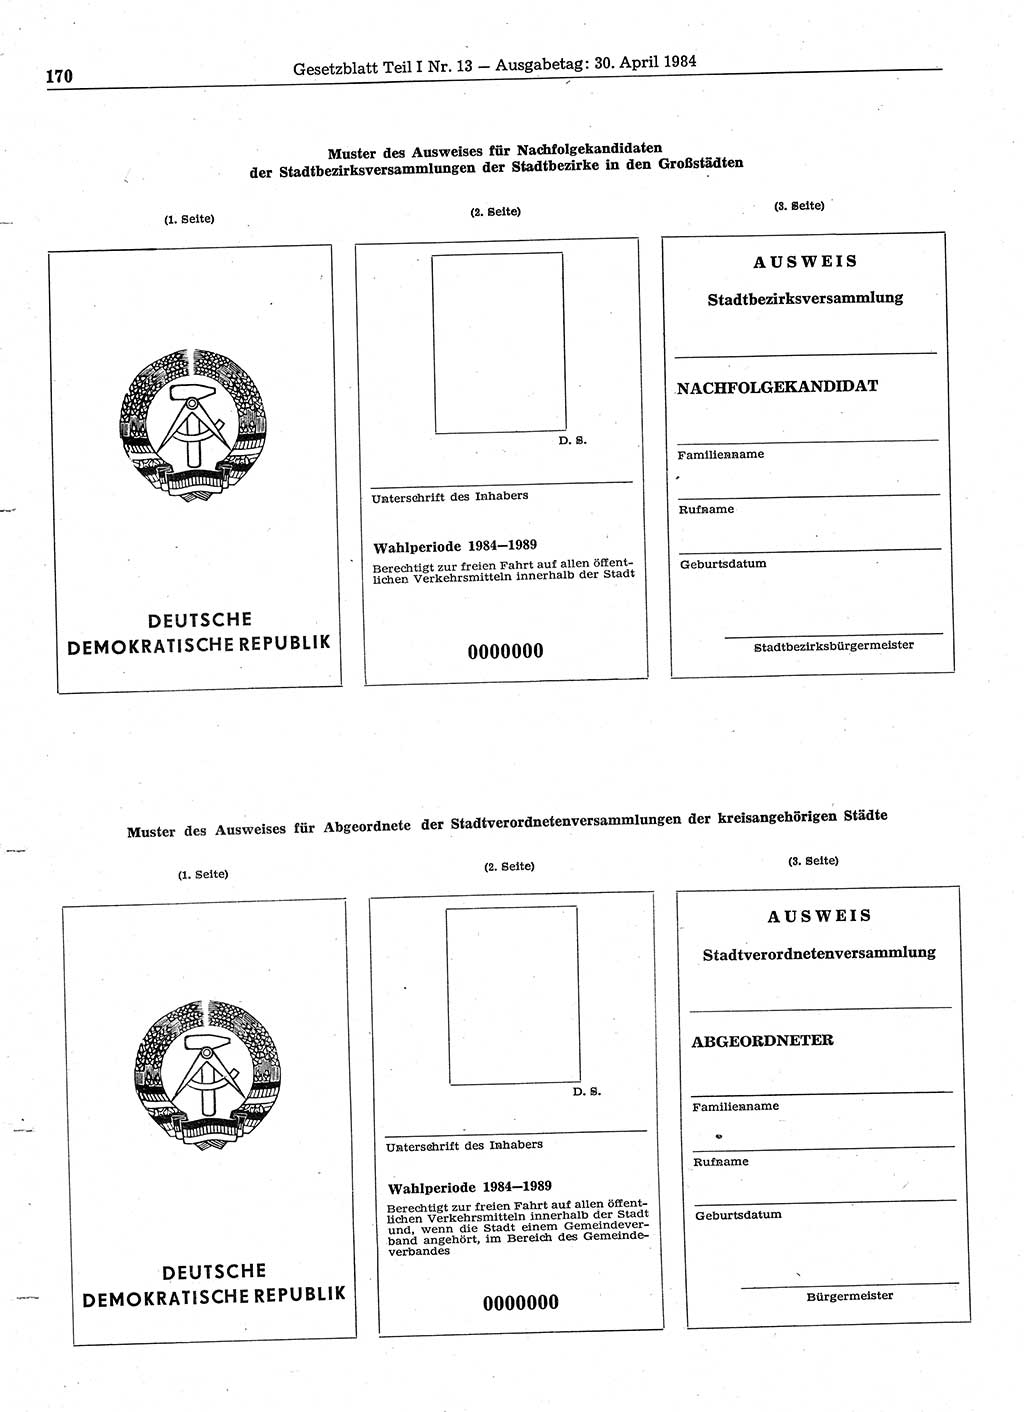 Gesetzblatt (GBl.) der Deutschen Demokratischen Republik (DDR) Teil Ⅰ 1984, Seite 170 (GBl. DDR Ⅰ 1984, S. 170)